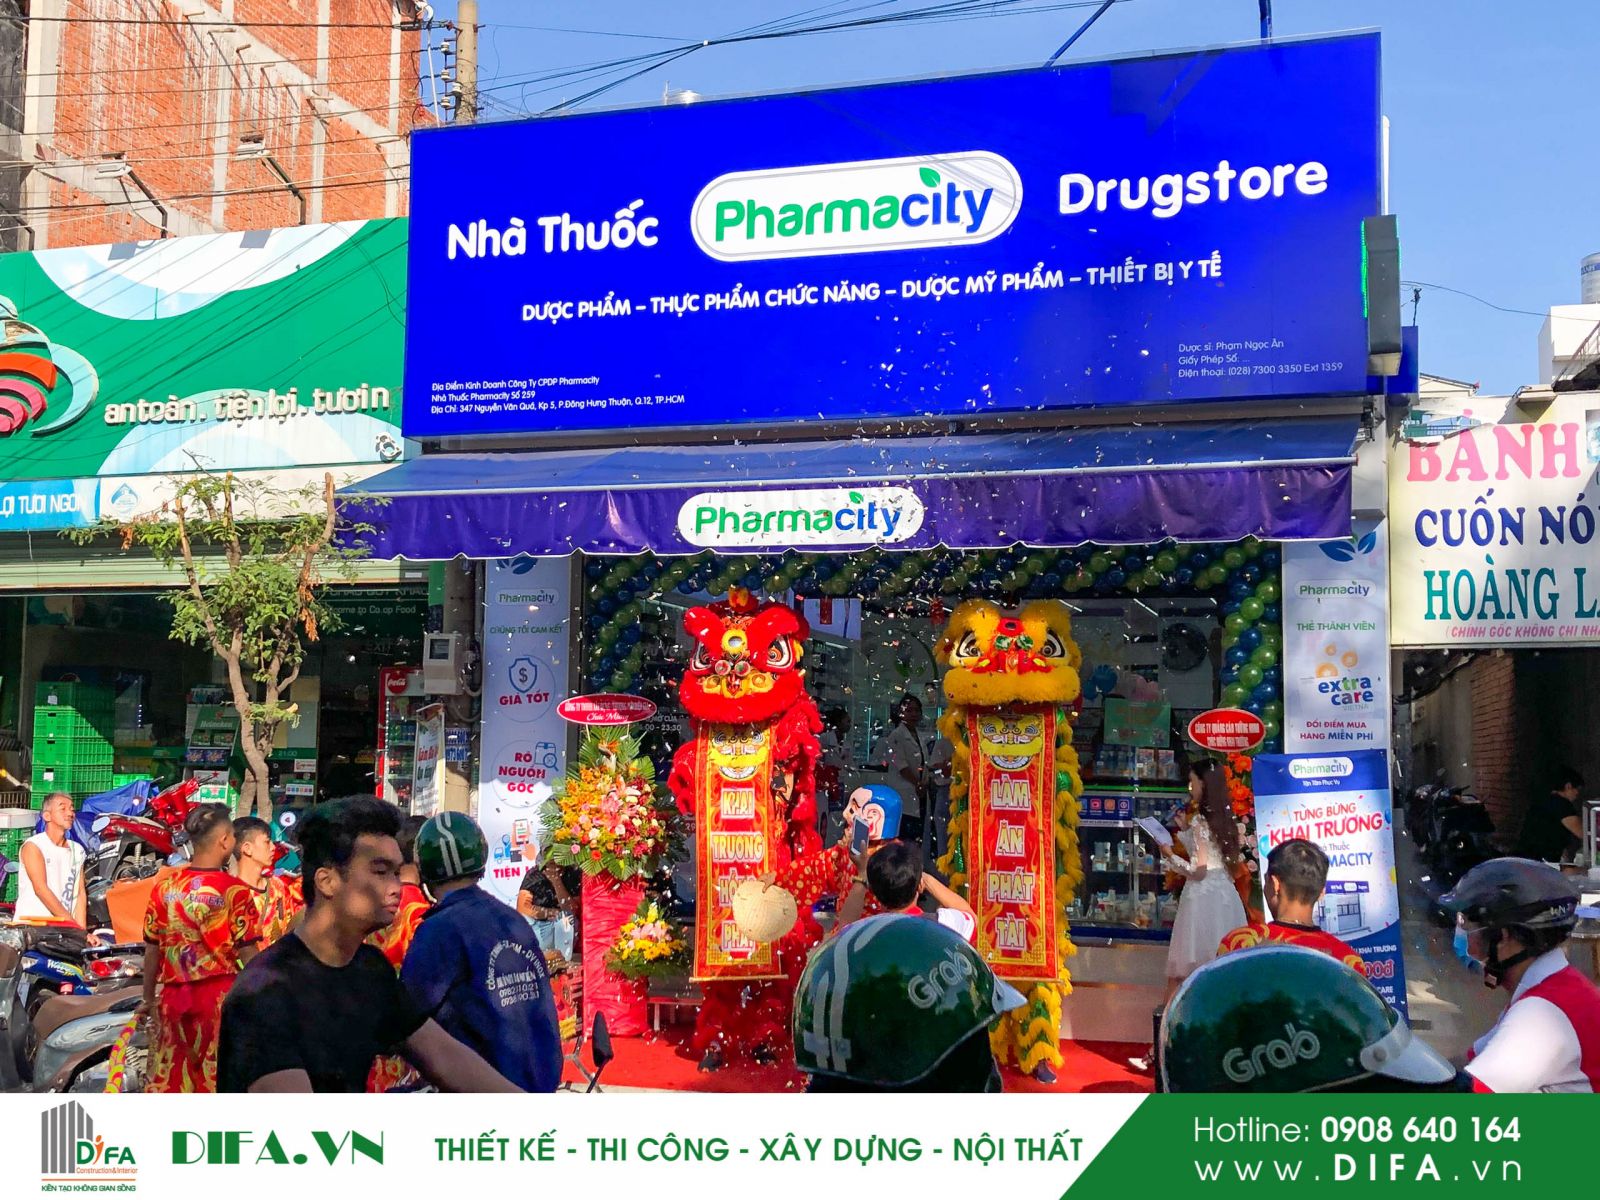 Thi công chuỗi cửa hàng đẹp - Hoàn thành nhà thuốc Pharmacity số 259 | Diệp Gia